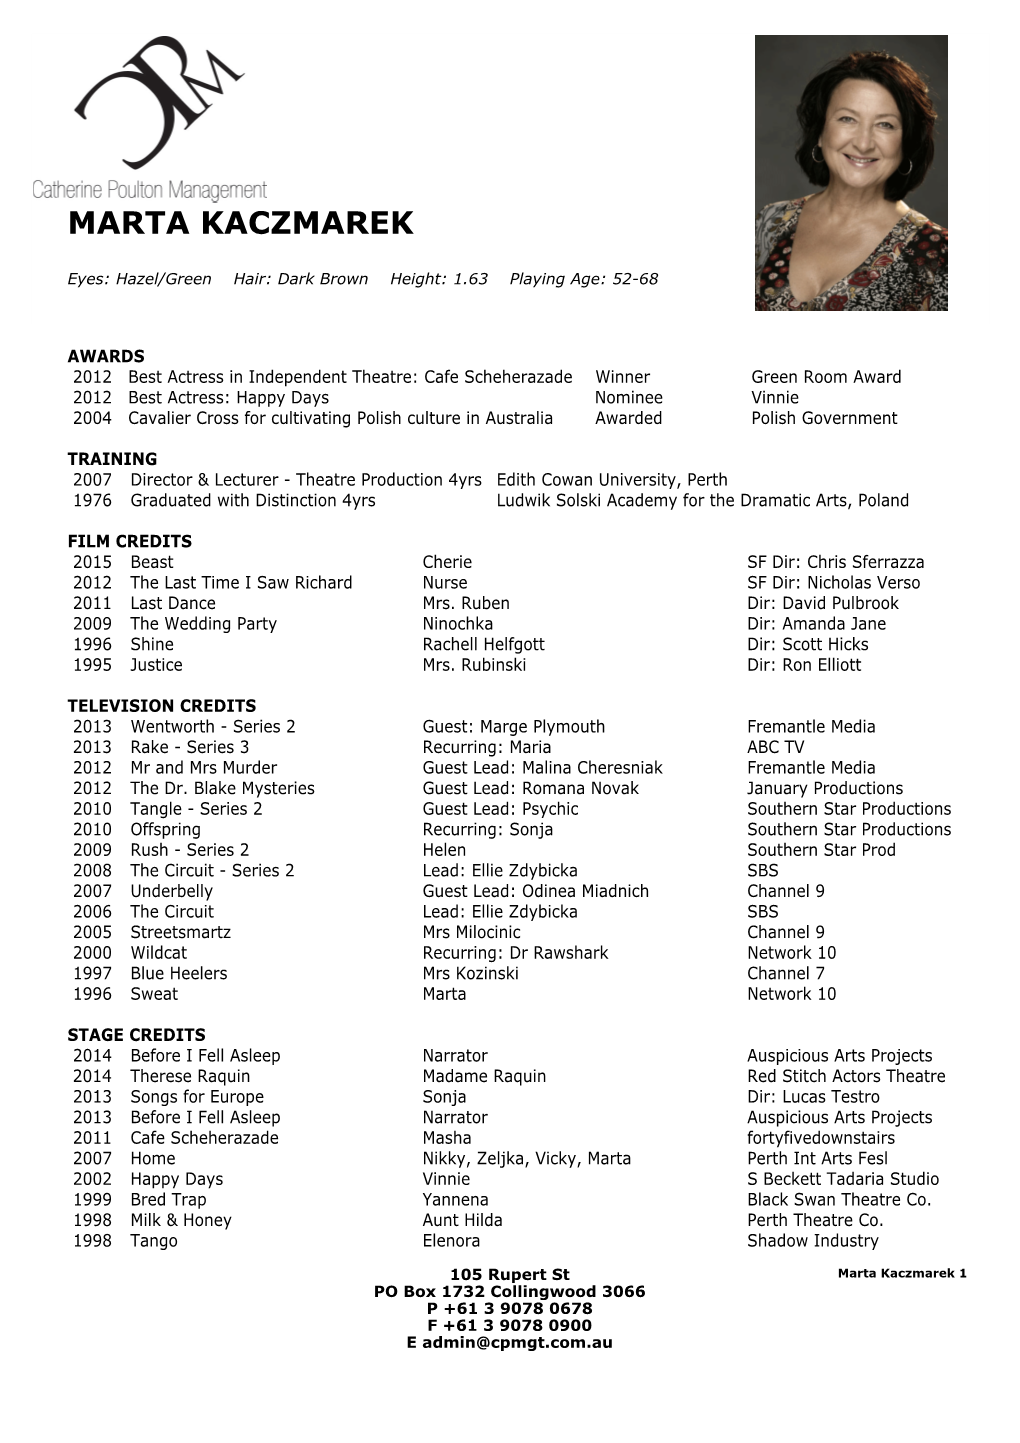 Marta Kaczmarek